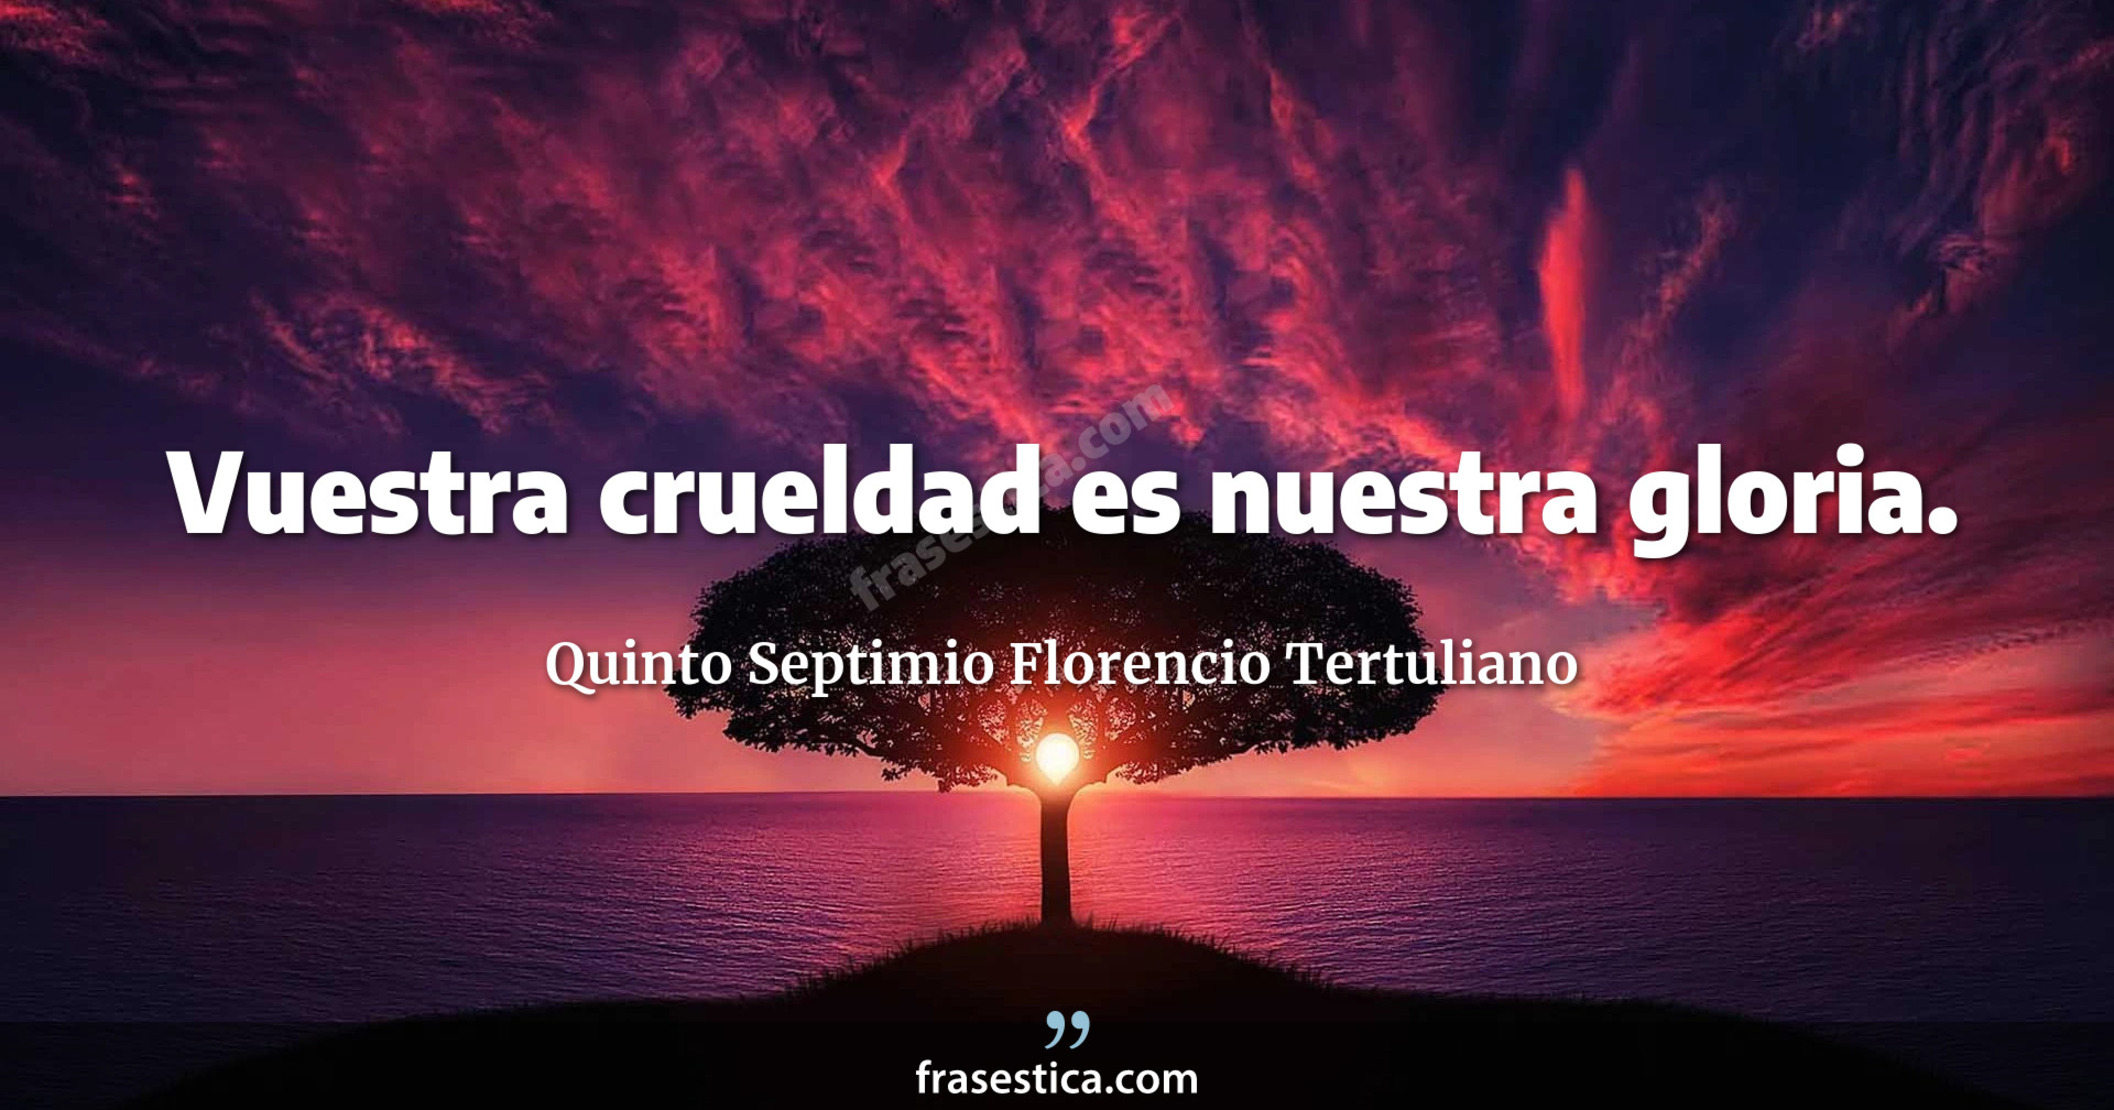 Vuestra crueldad es nuestra gloria. - Quinto Septimio Florencio Tertuliano